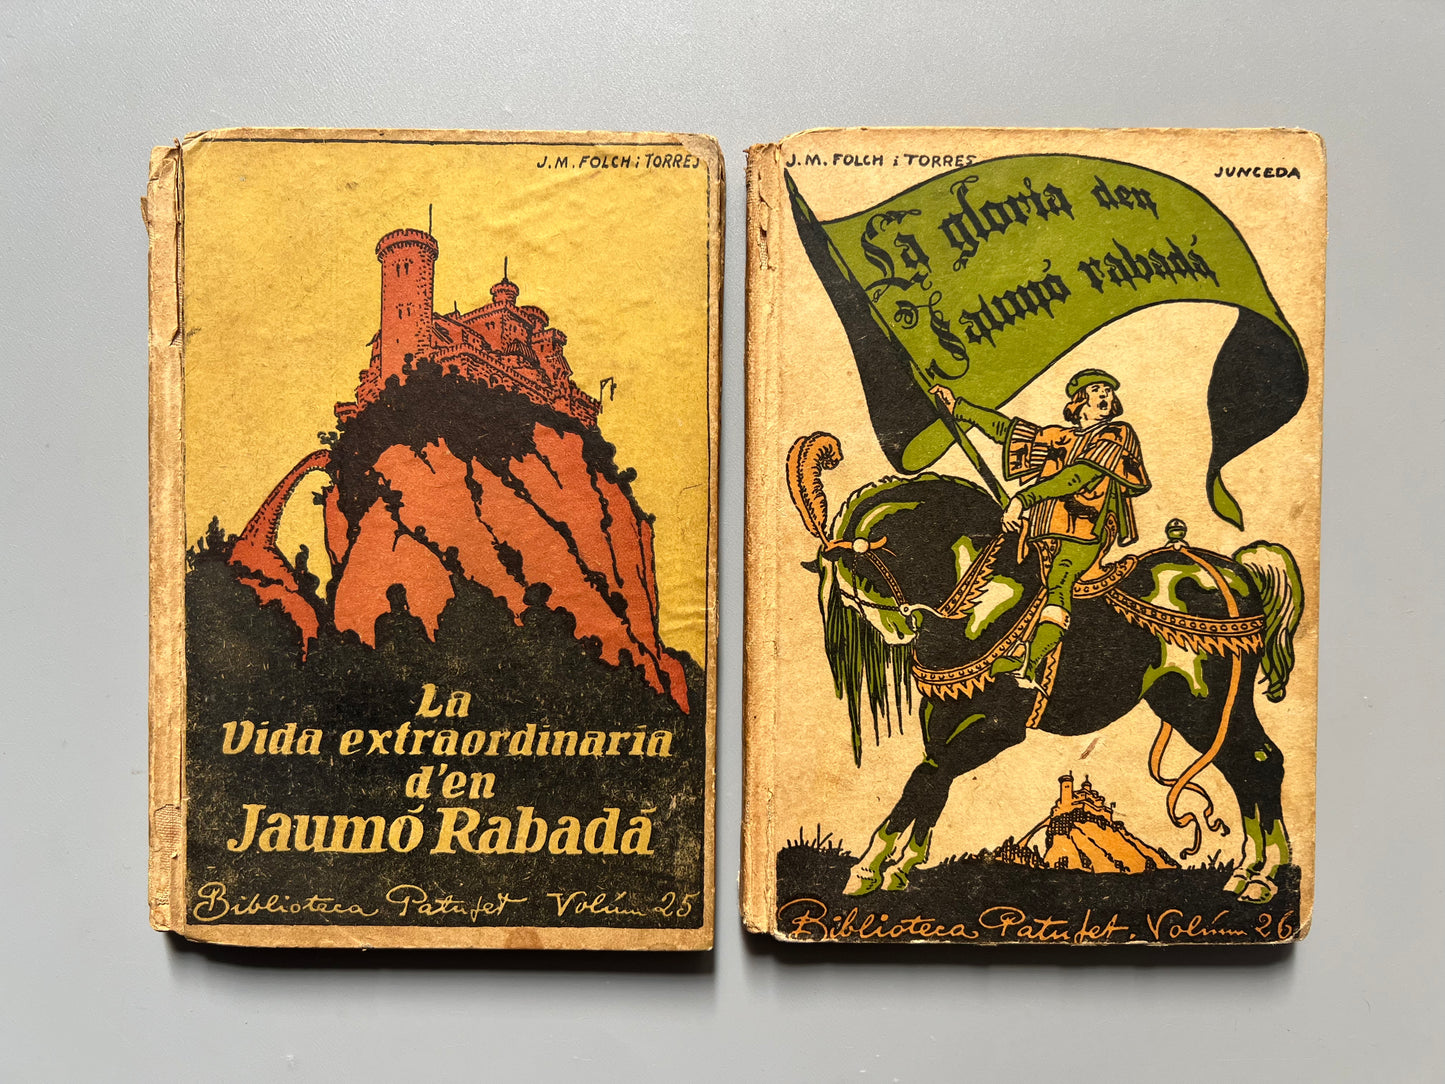 La vida extraordinaria d'en Jaumó Rabadá y La gloria d'en Jaumó Rabadá, J. M. Folch i Torres - J. Baguñá editor i llibreter, 1915/1916